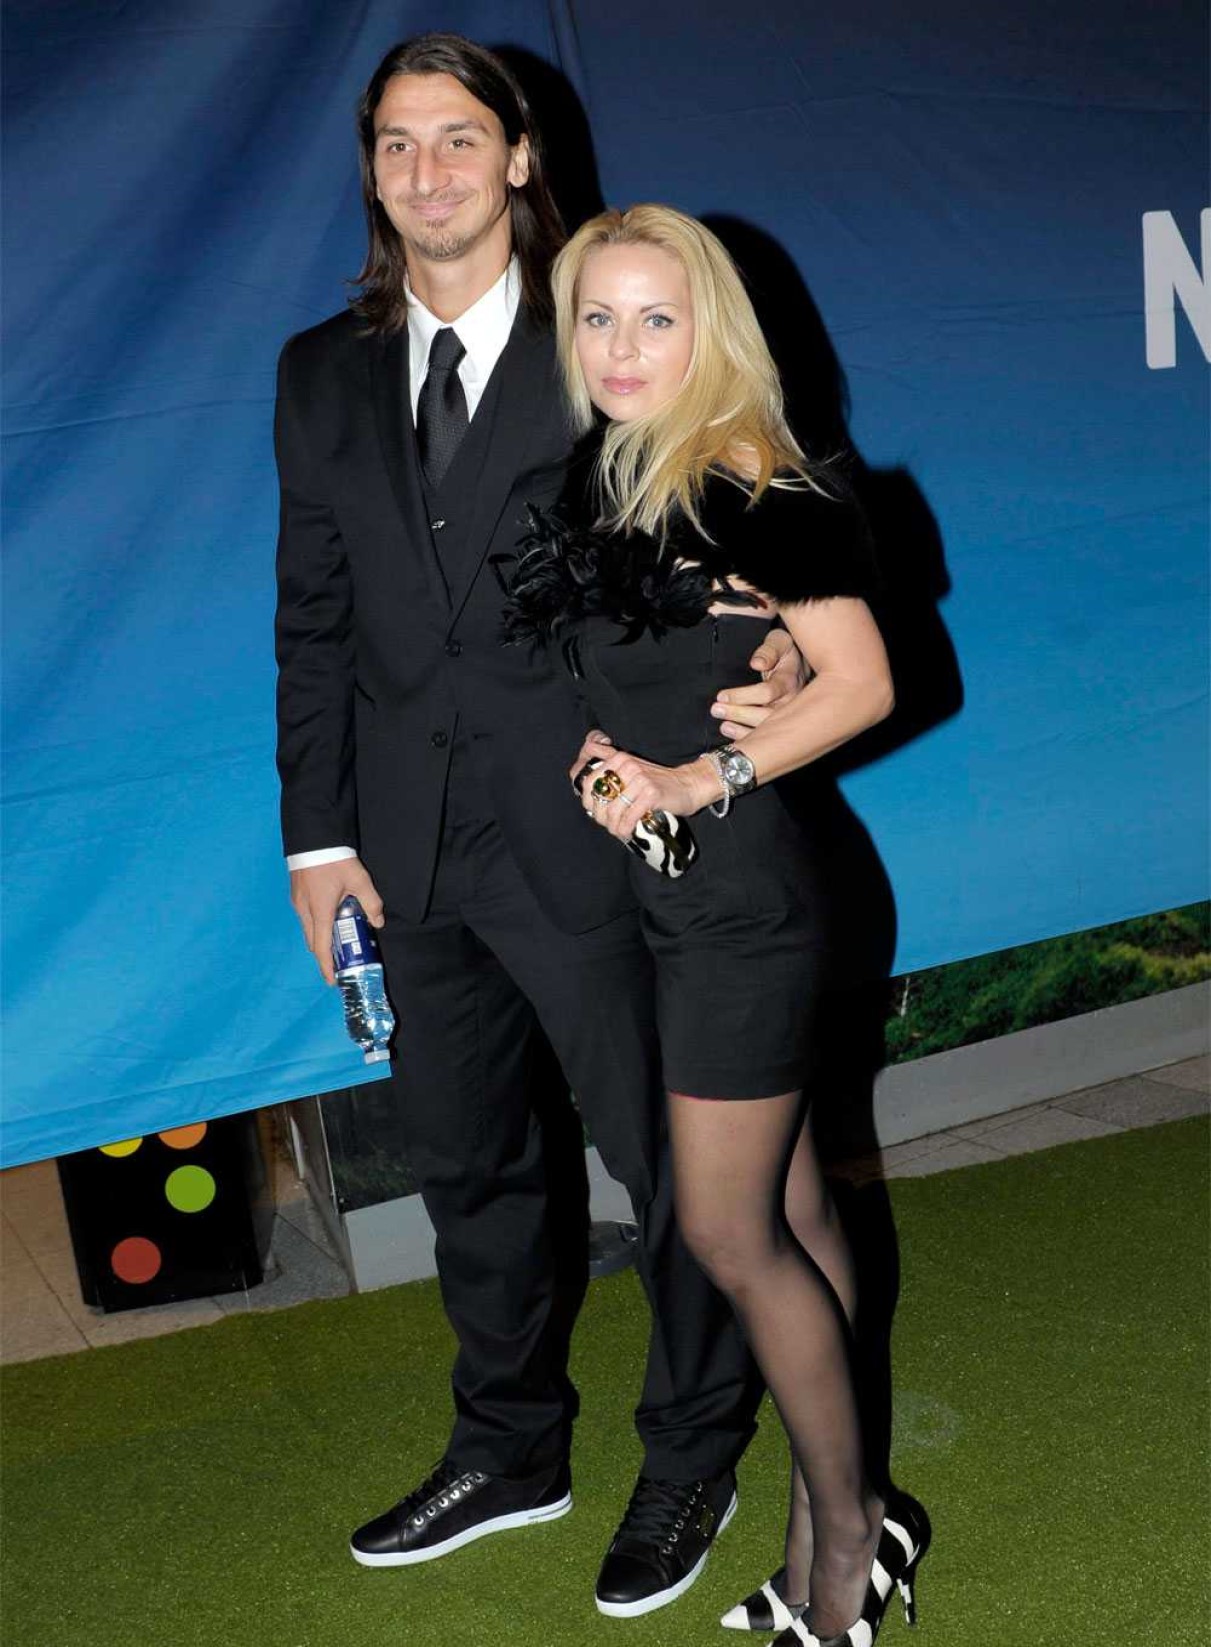 Zlatan Ibrahimovic eta altezza peso moglie figli valore mercato contratto